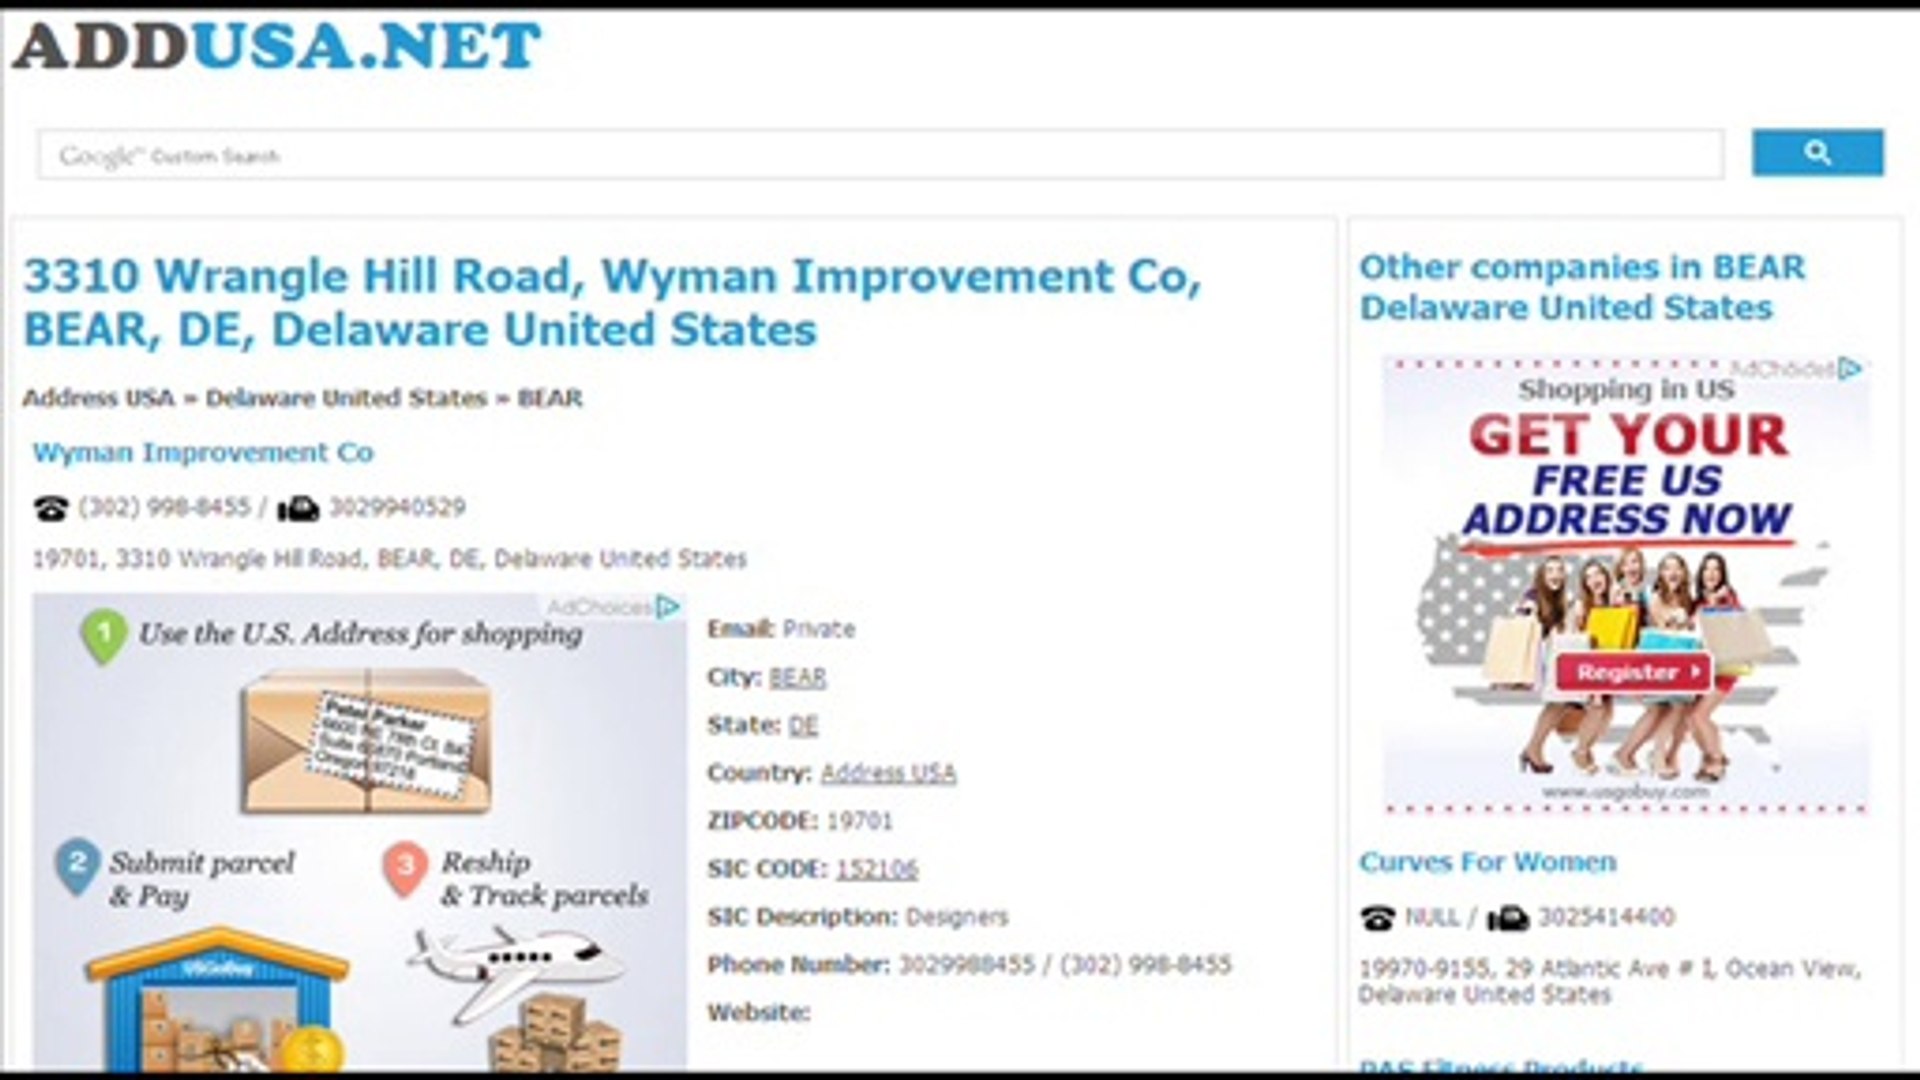 ⁣www.addusa.net - USA Directory, Address Company USA